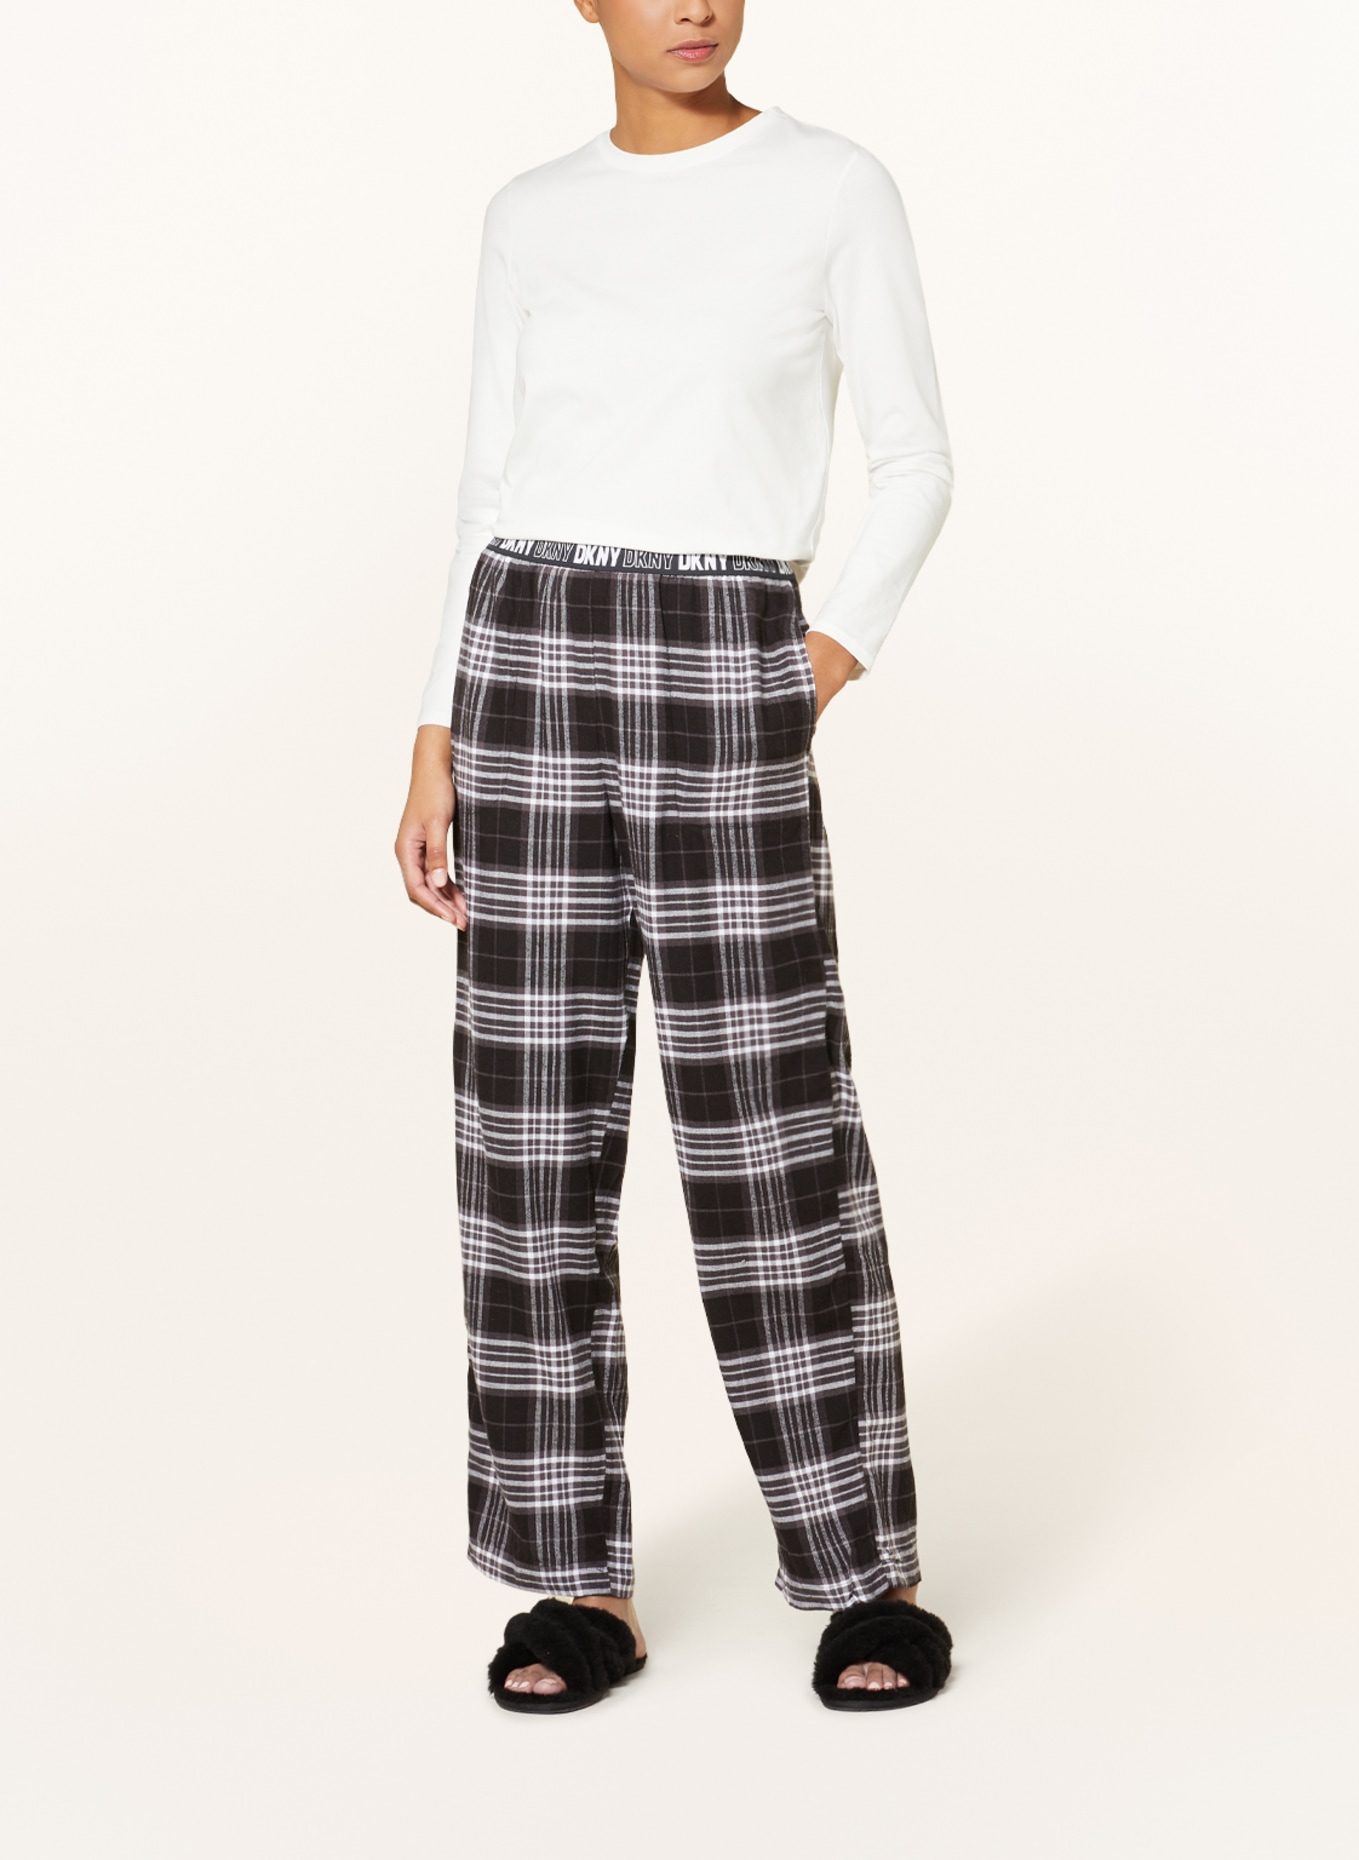 DKNY Pajama pants in flannel, Color: BLACK/ DARK GRAY/ WHITE (Image 2)